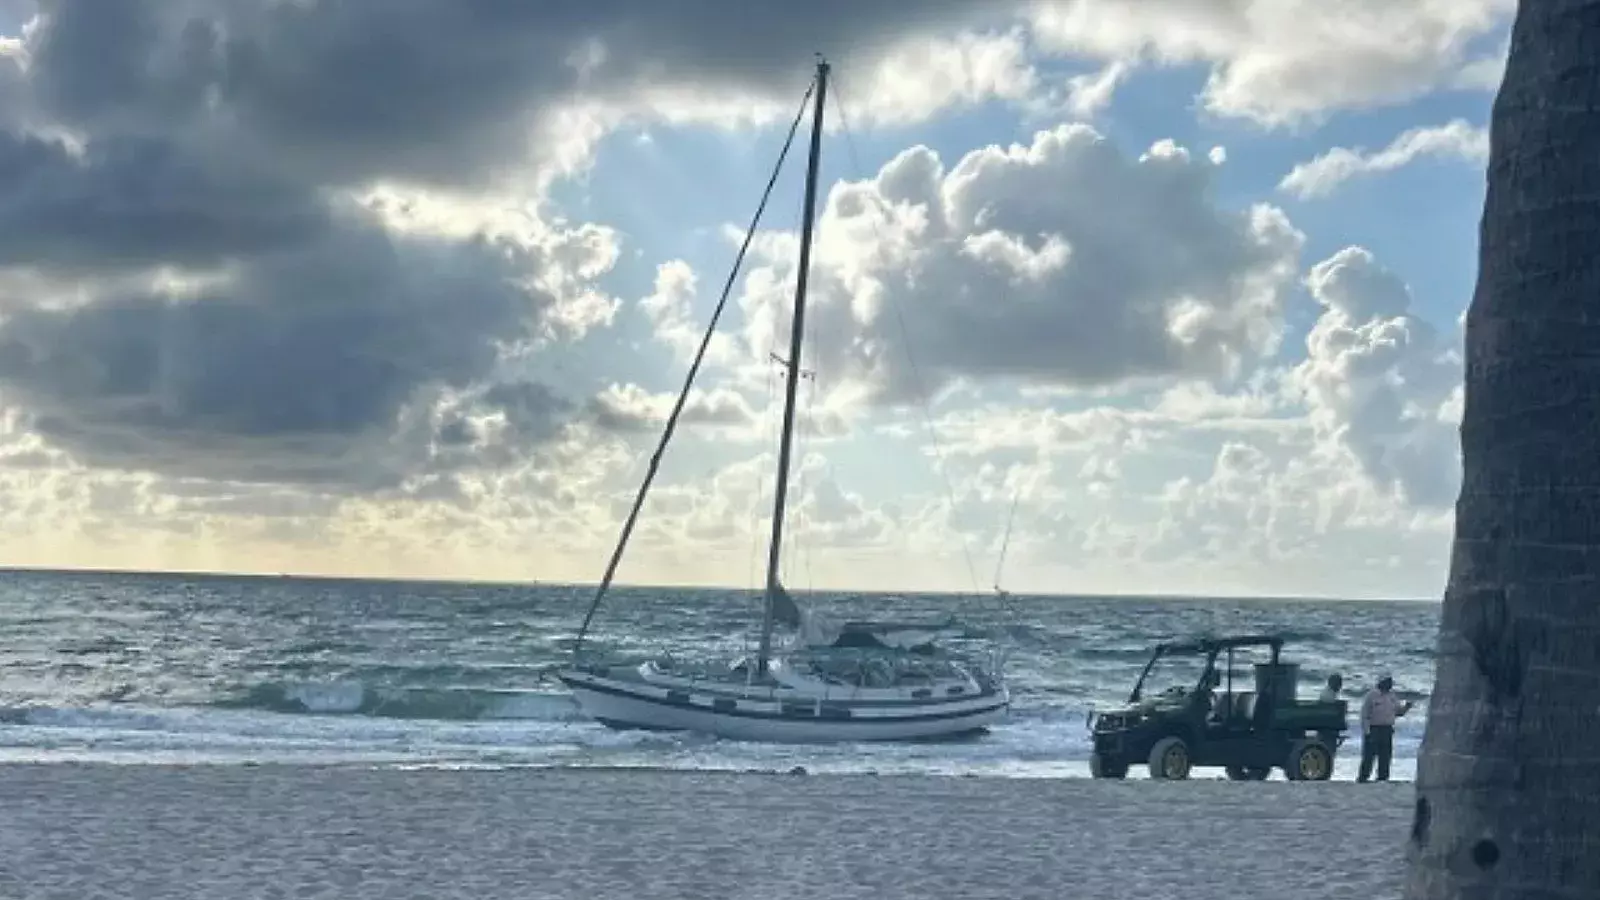 Presuntos migrantes llegan a playa de Florida en embarcación que dejaron abandonada